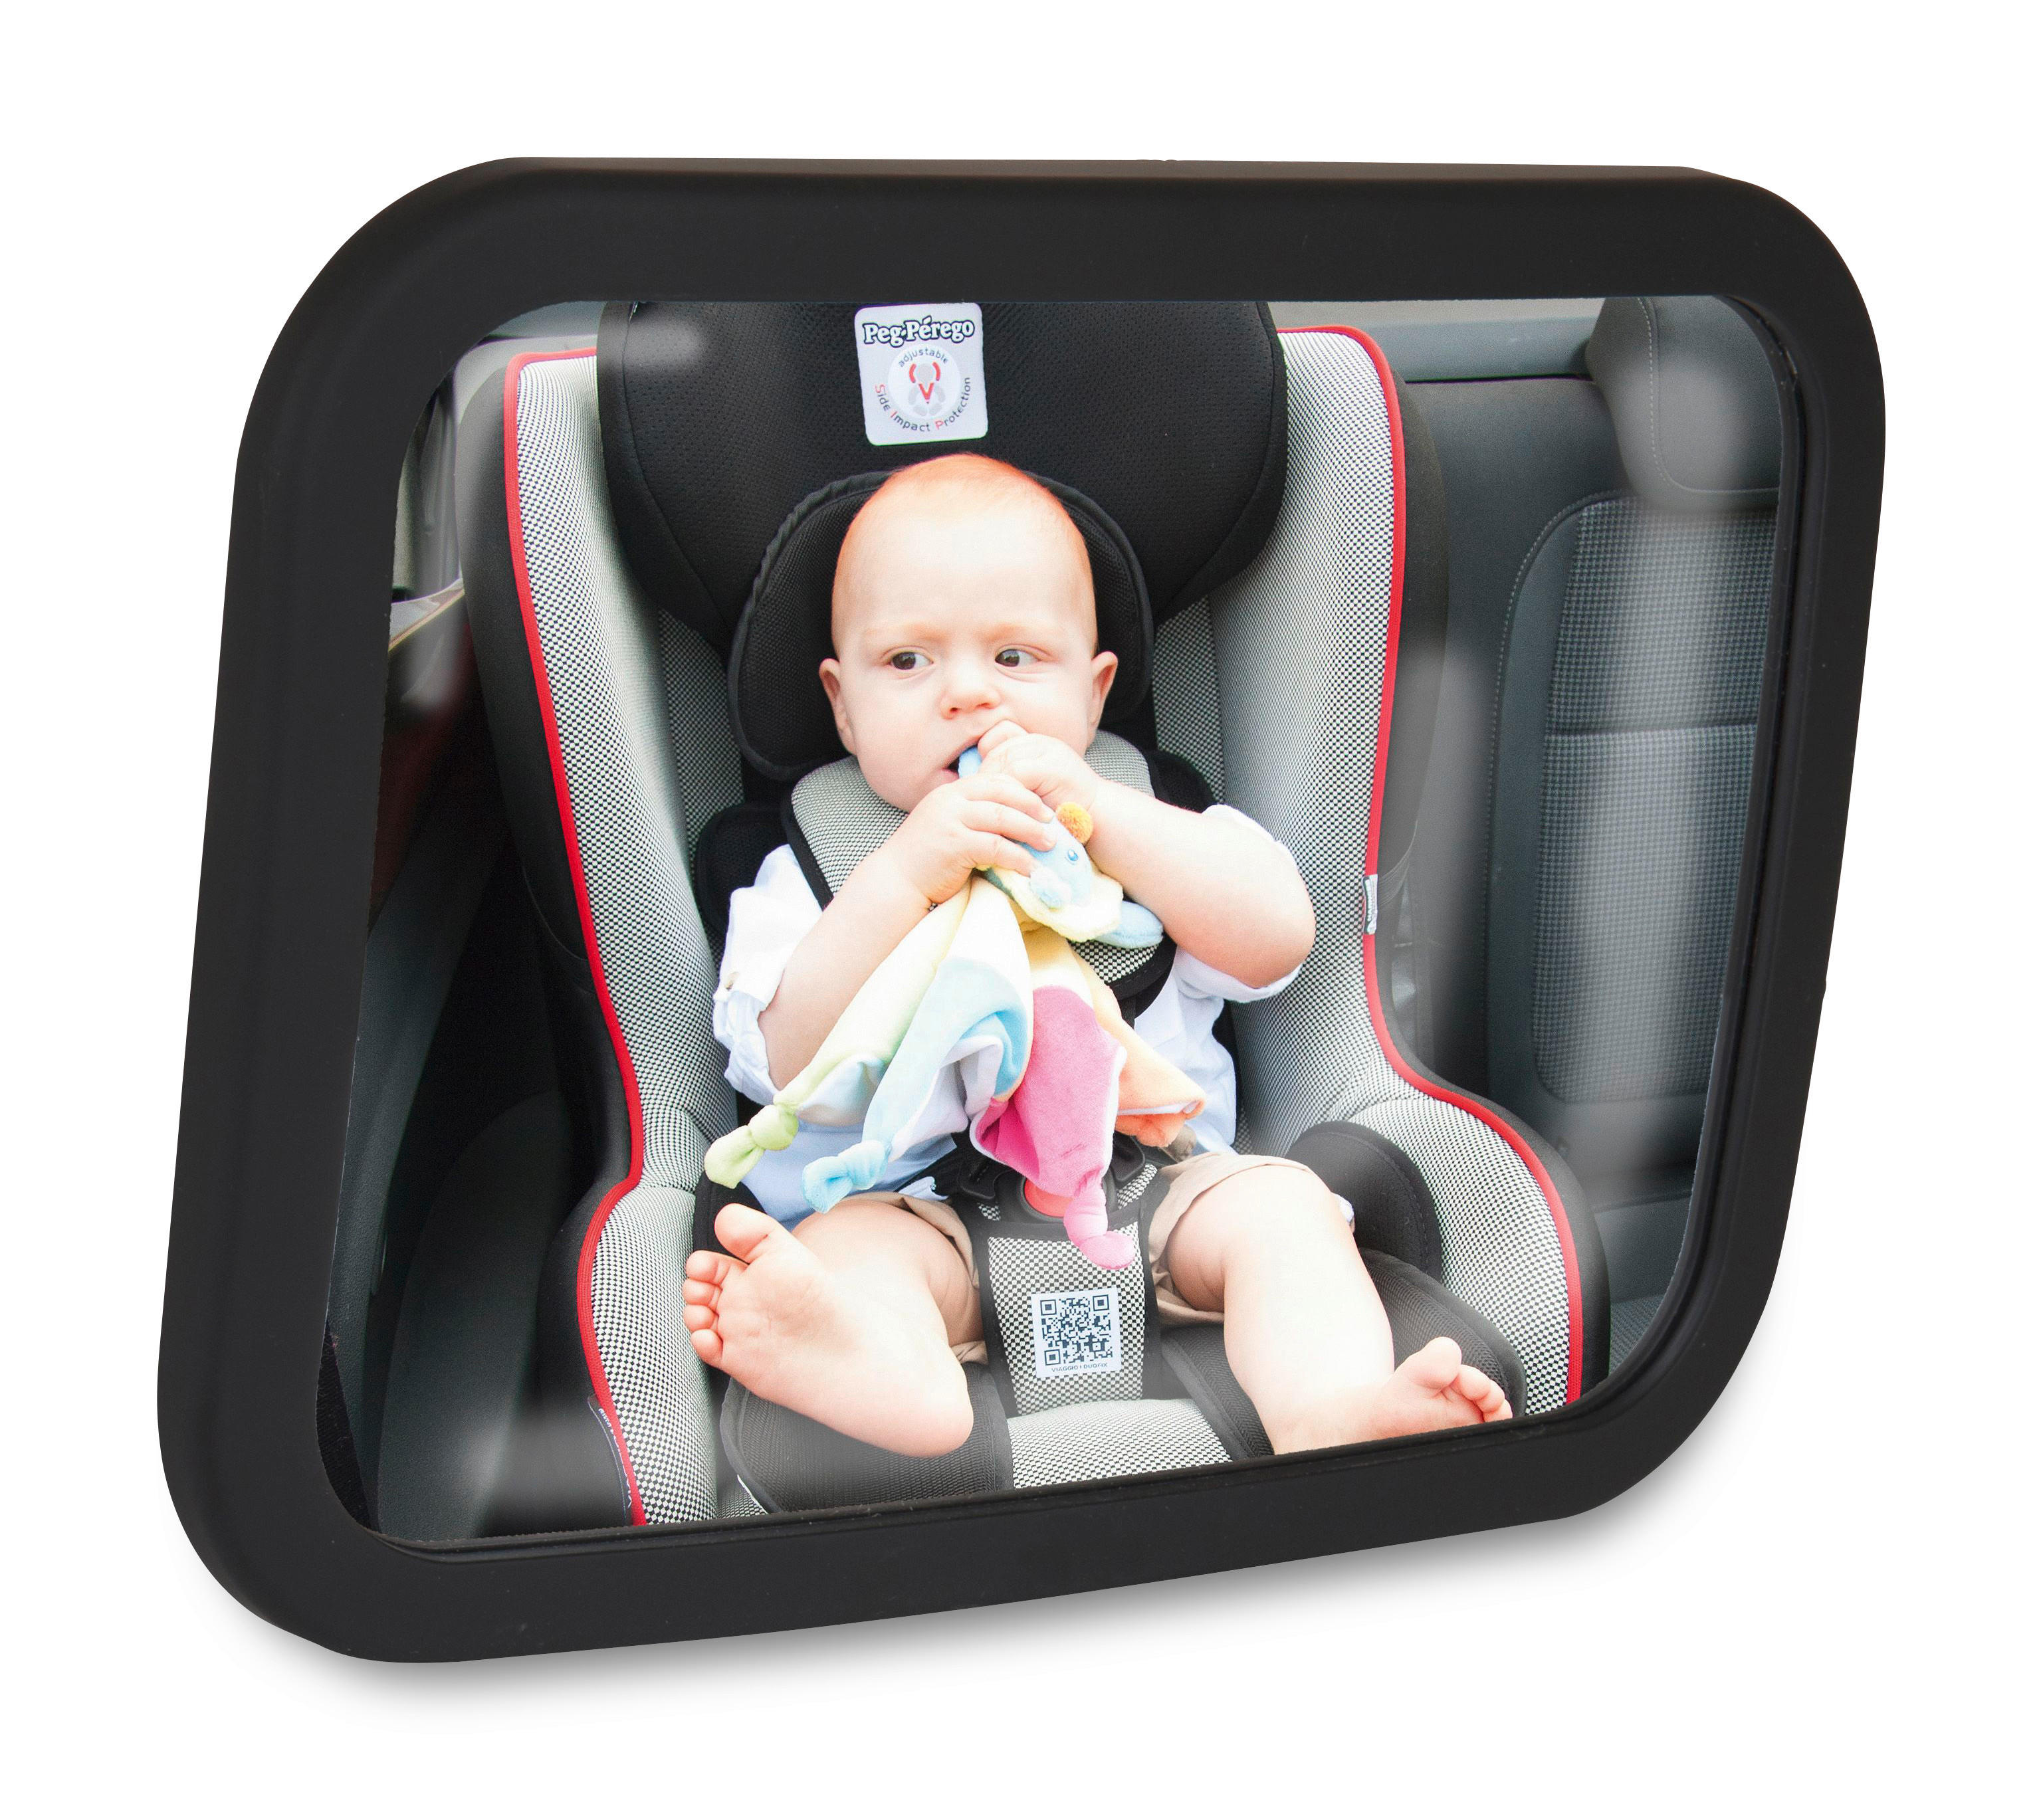 Bruchsicheres Acryl-Glas Babyspiegel Rücksitzspiegel für Babys Autospiegel Baby 